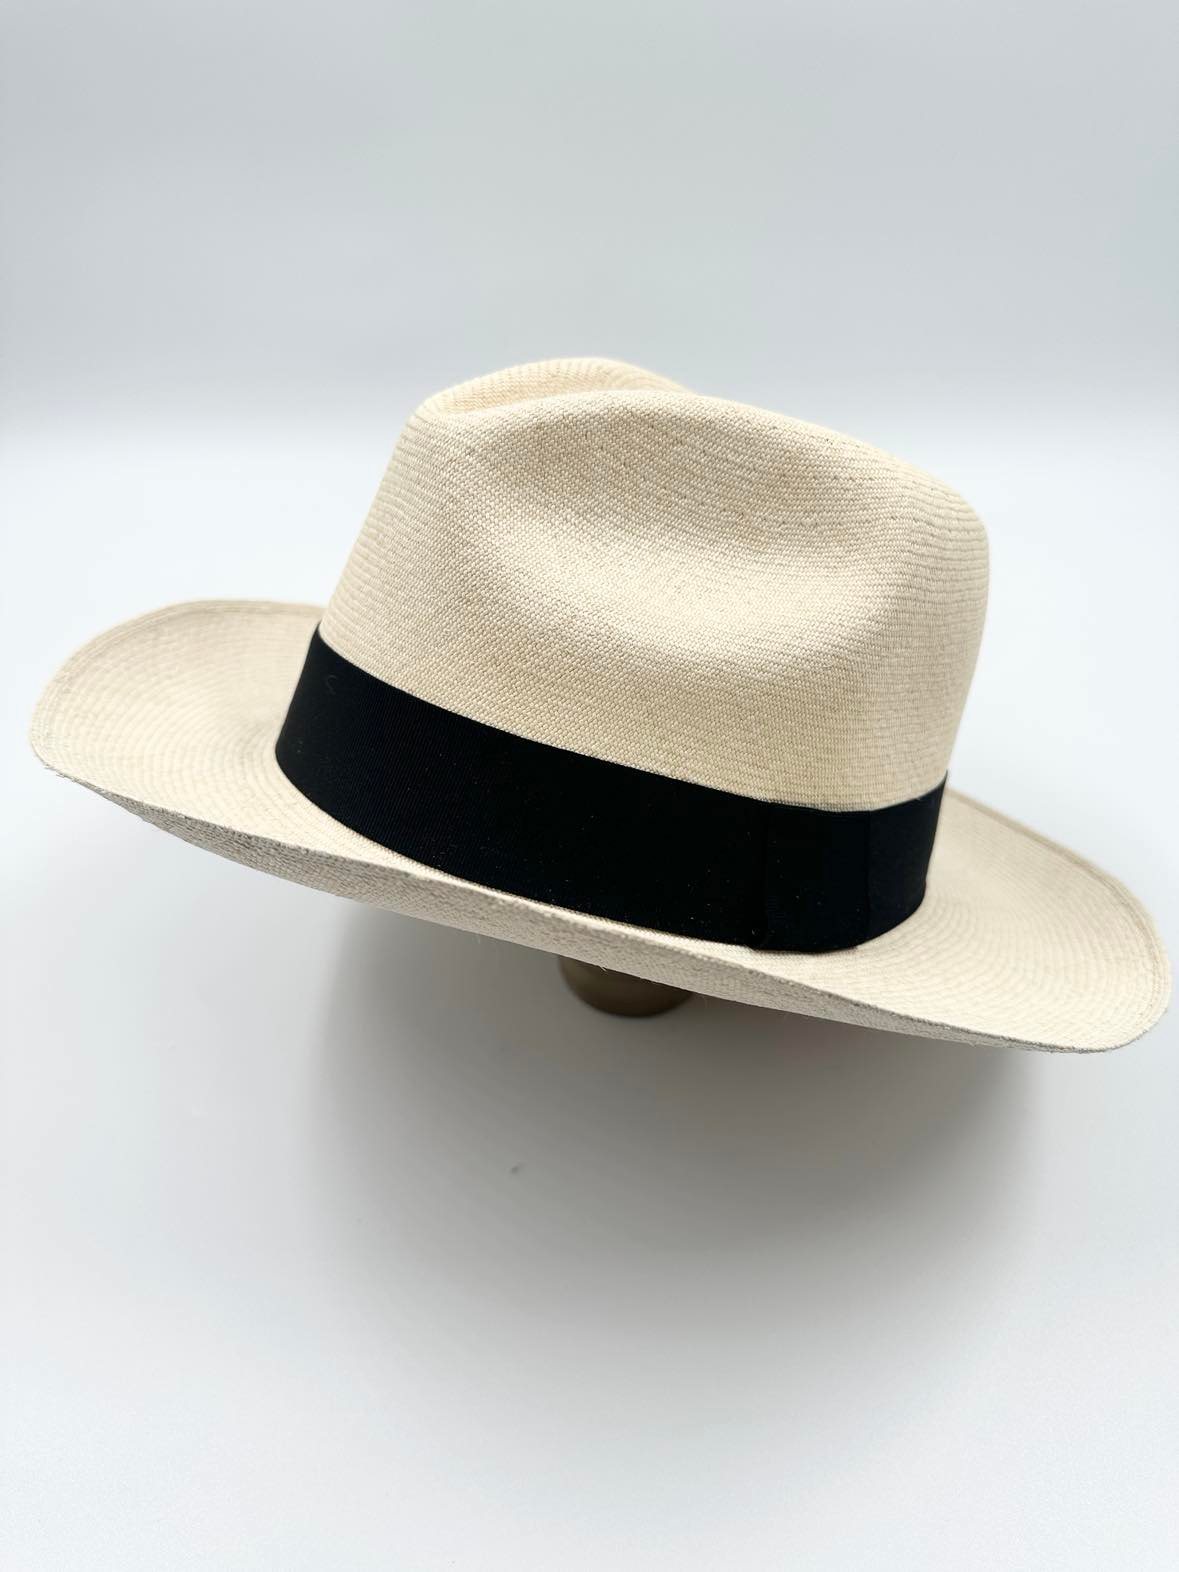 Ægte Montecristi Fedora Panama Hat med en kvalitet på 19-20 fletninger pr. inch - unik og håndflettet i Ecuador